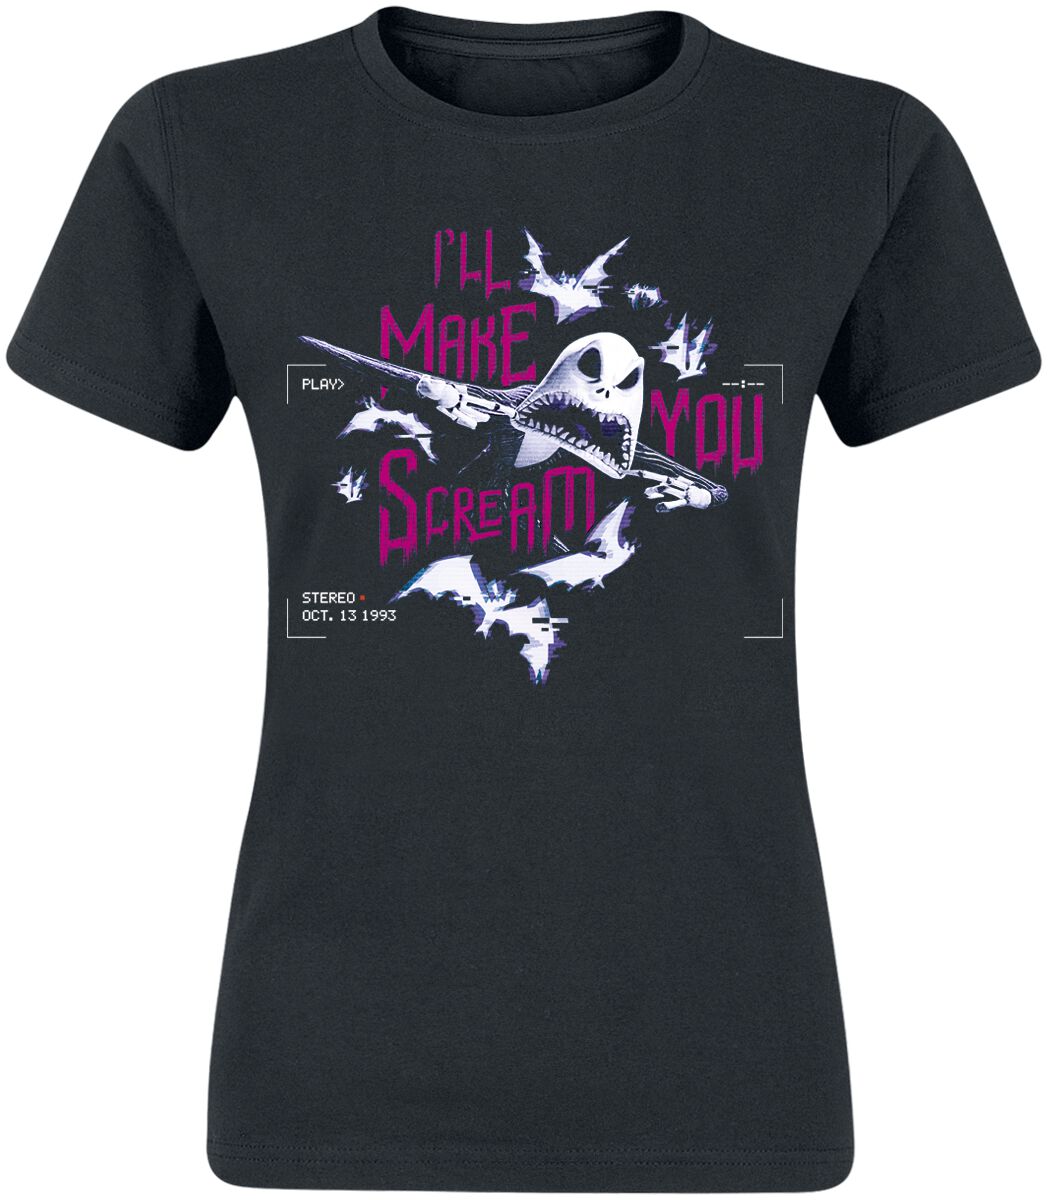 The Nightmare Before Christmas T-Shirt - Make You Scream - S bis XXL - für Damen - Größe L - schwarz  - EMP exklusives Merchandise!